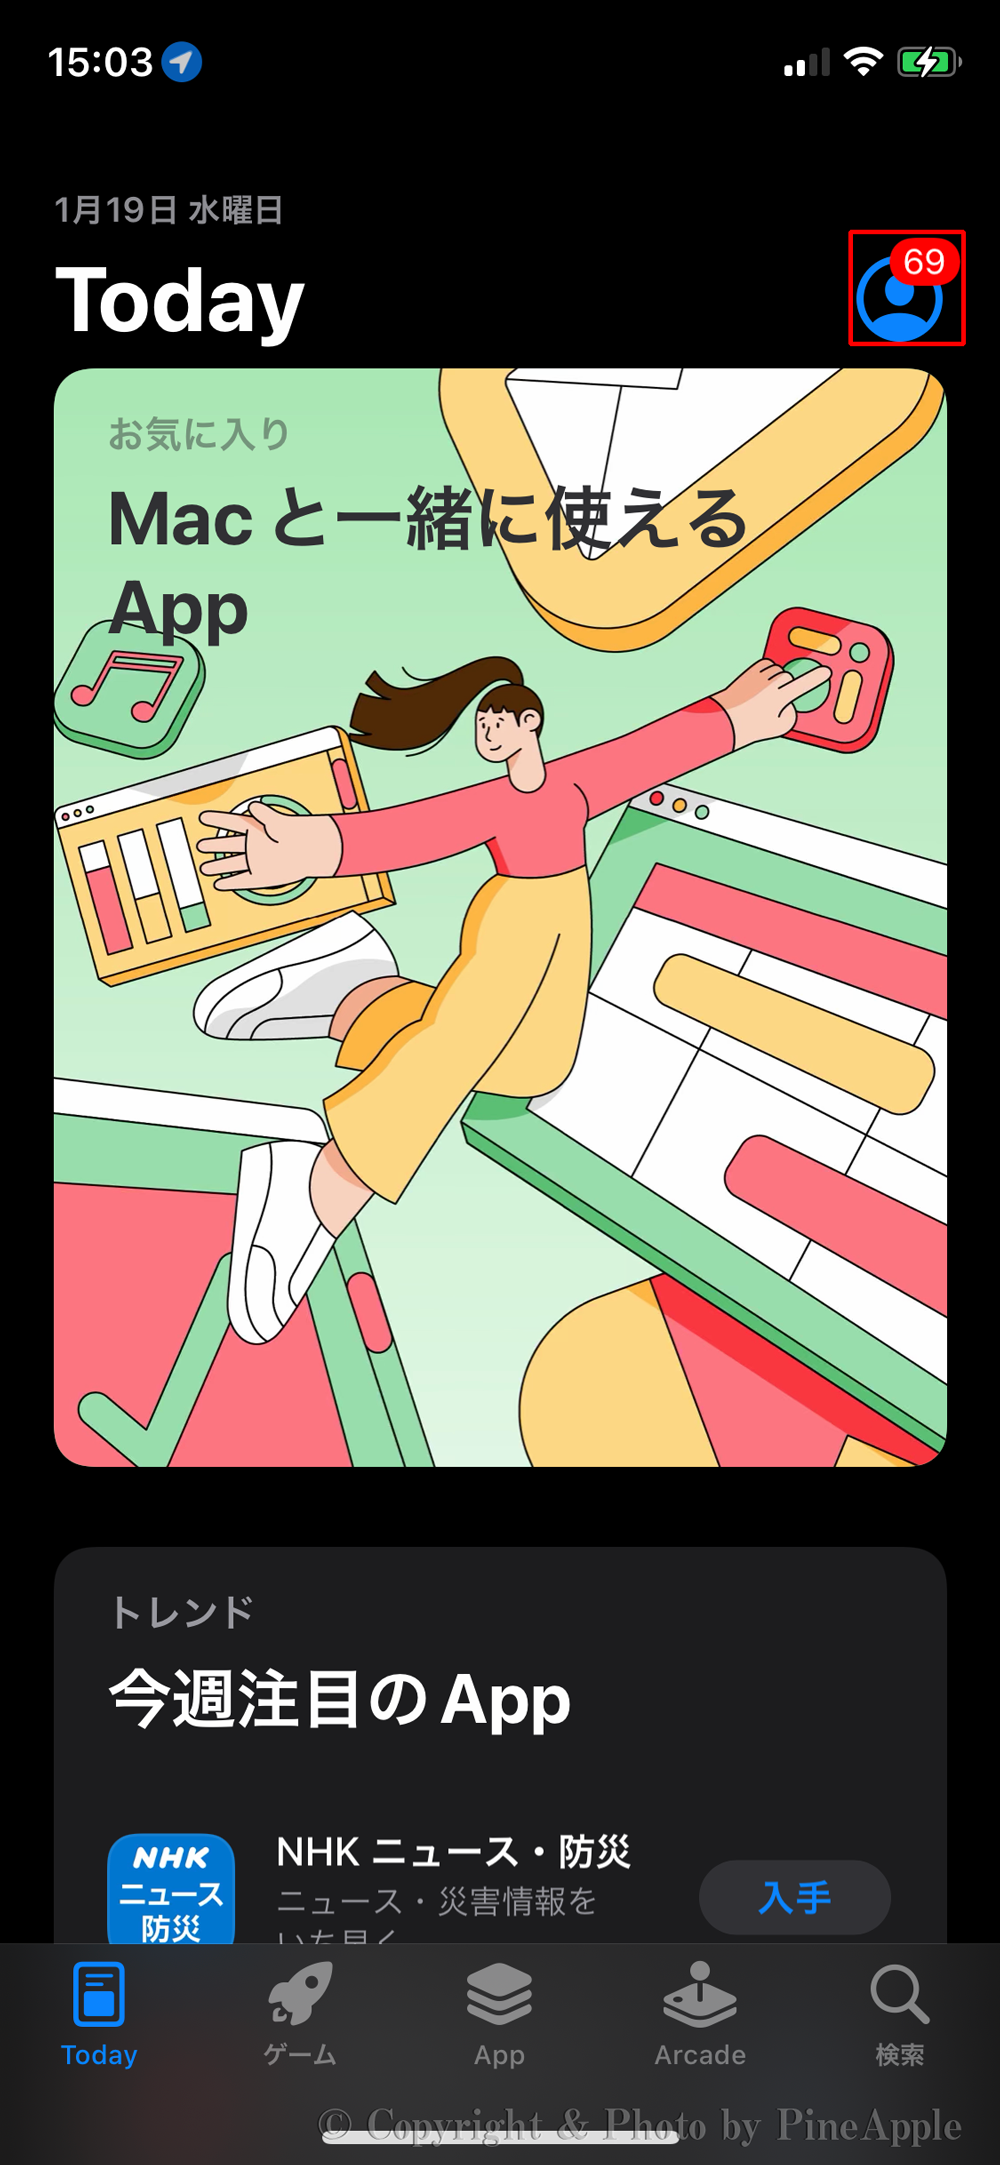 App Store：画面右上部の "プロフィール アイコン" をタップ